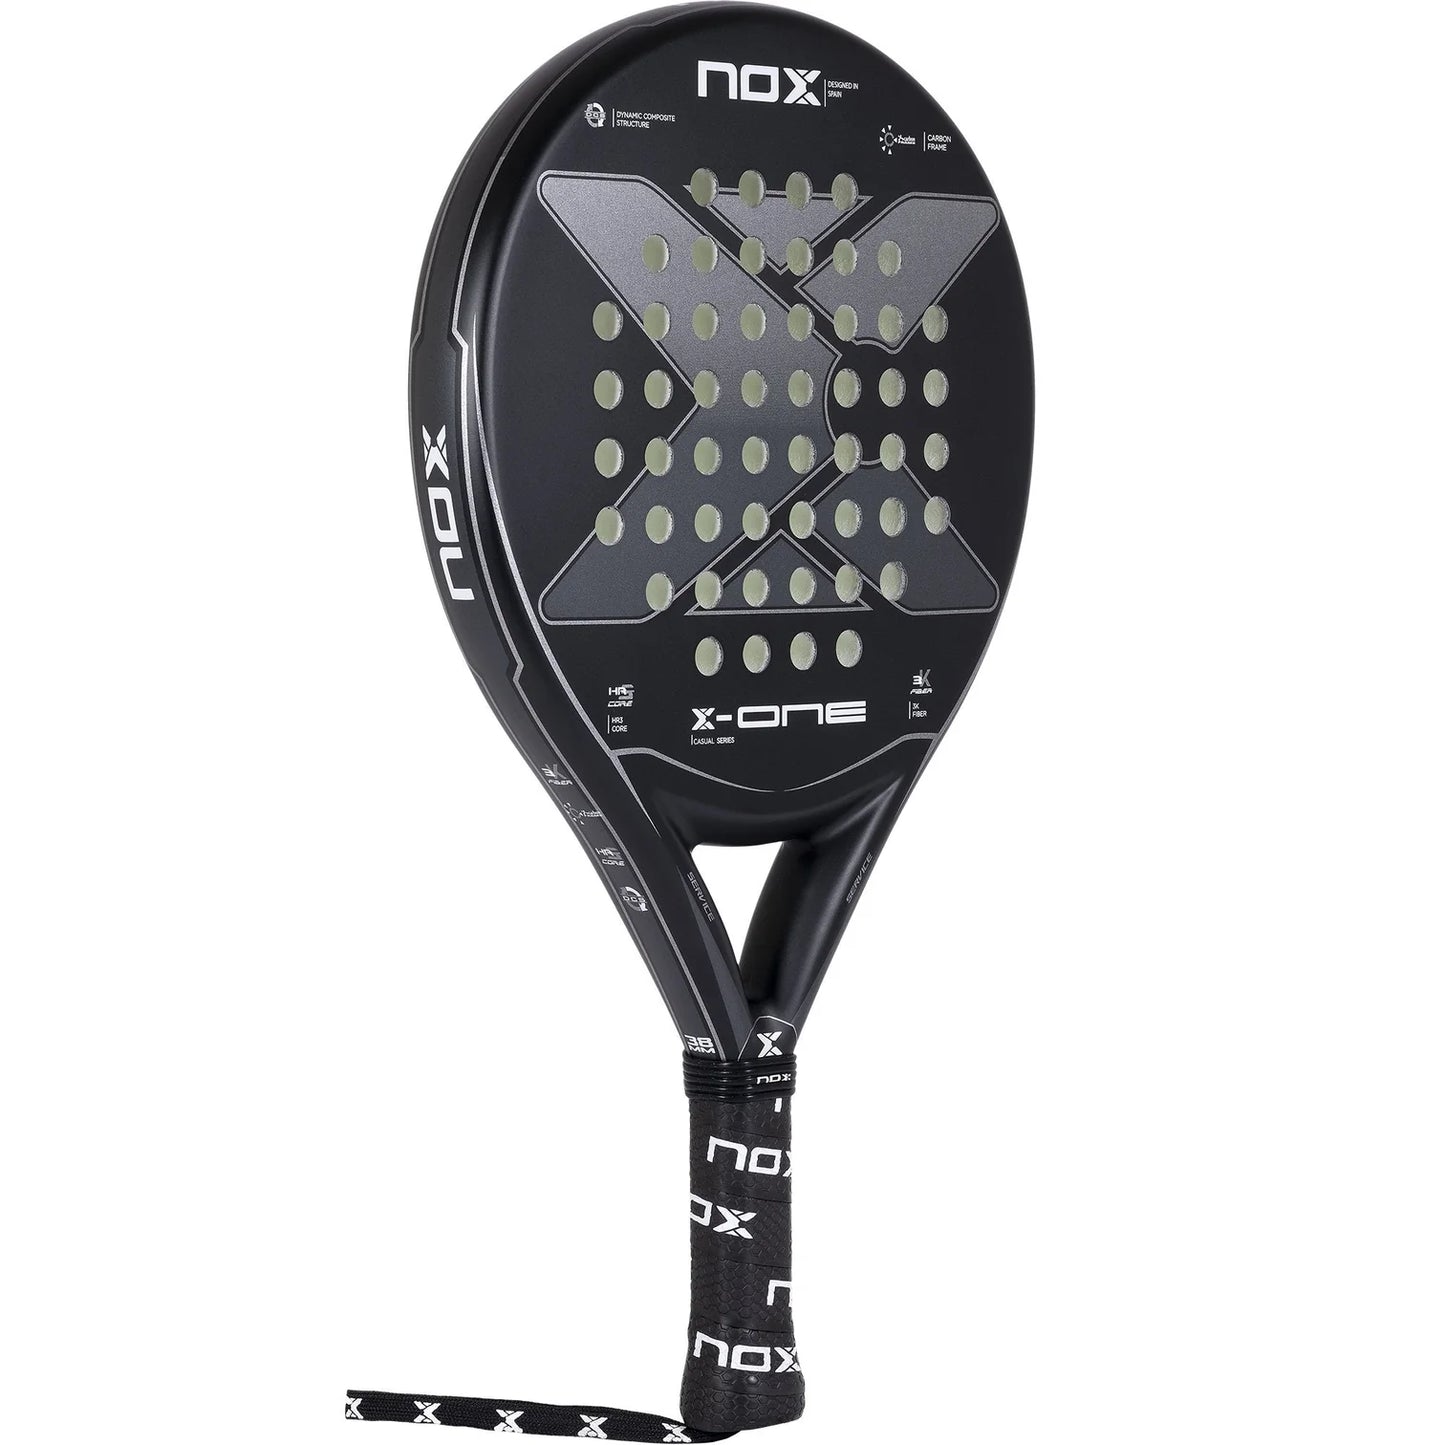 NOX PADEL RACKET - Round Shape in color black/grey.